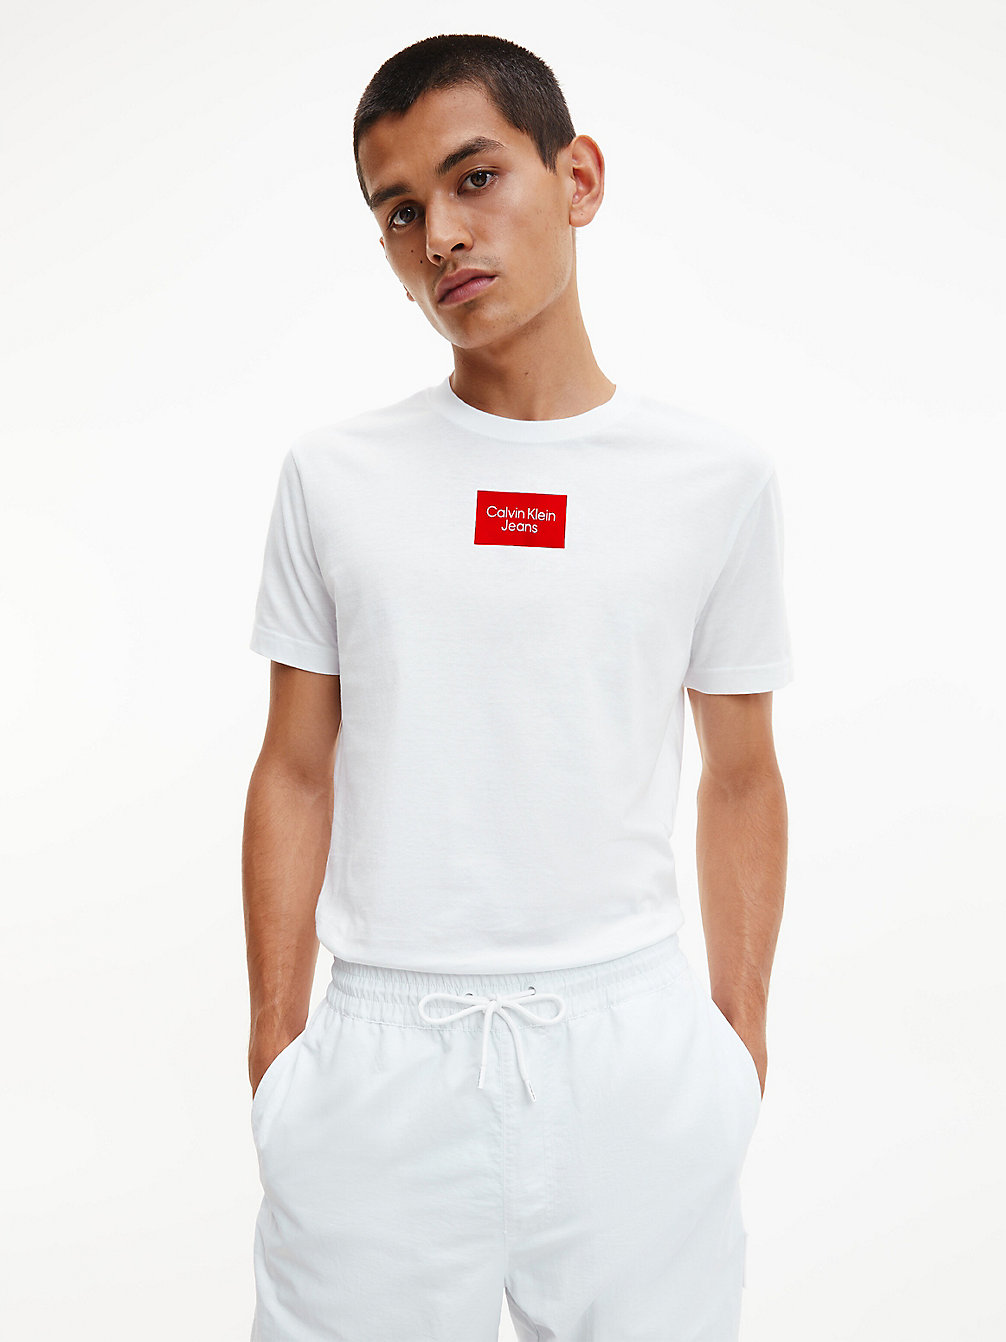 BRIGHT WHITE > Schmales T-Shirt Aus Bio-Baumwolle > undefined Herren - Calvin Klein